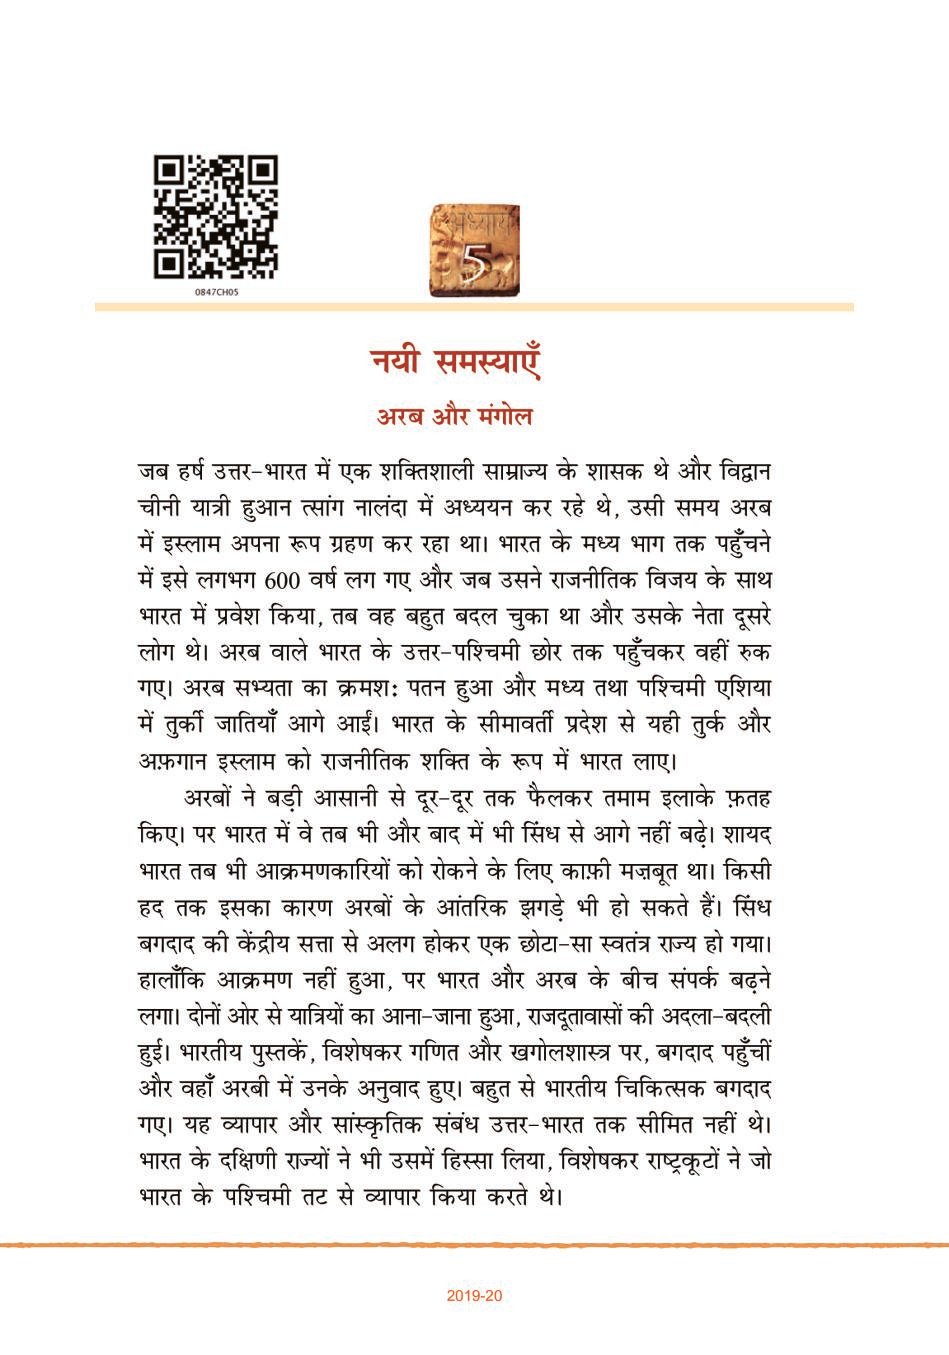 NCERT Book Class 8 Hindi (भारत की खोज) Chapter 5 नयी समस्याएँ - Page 1